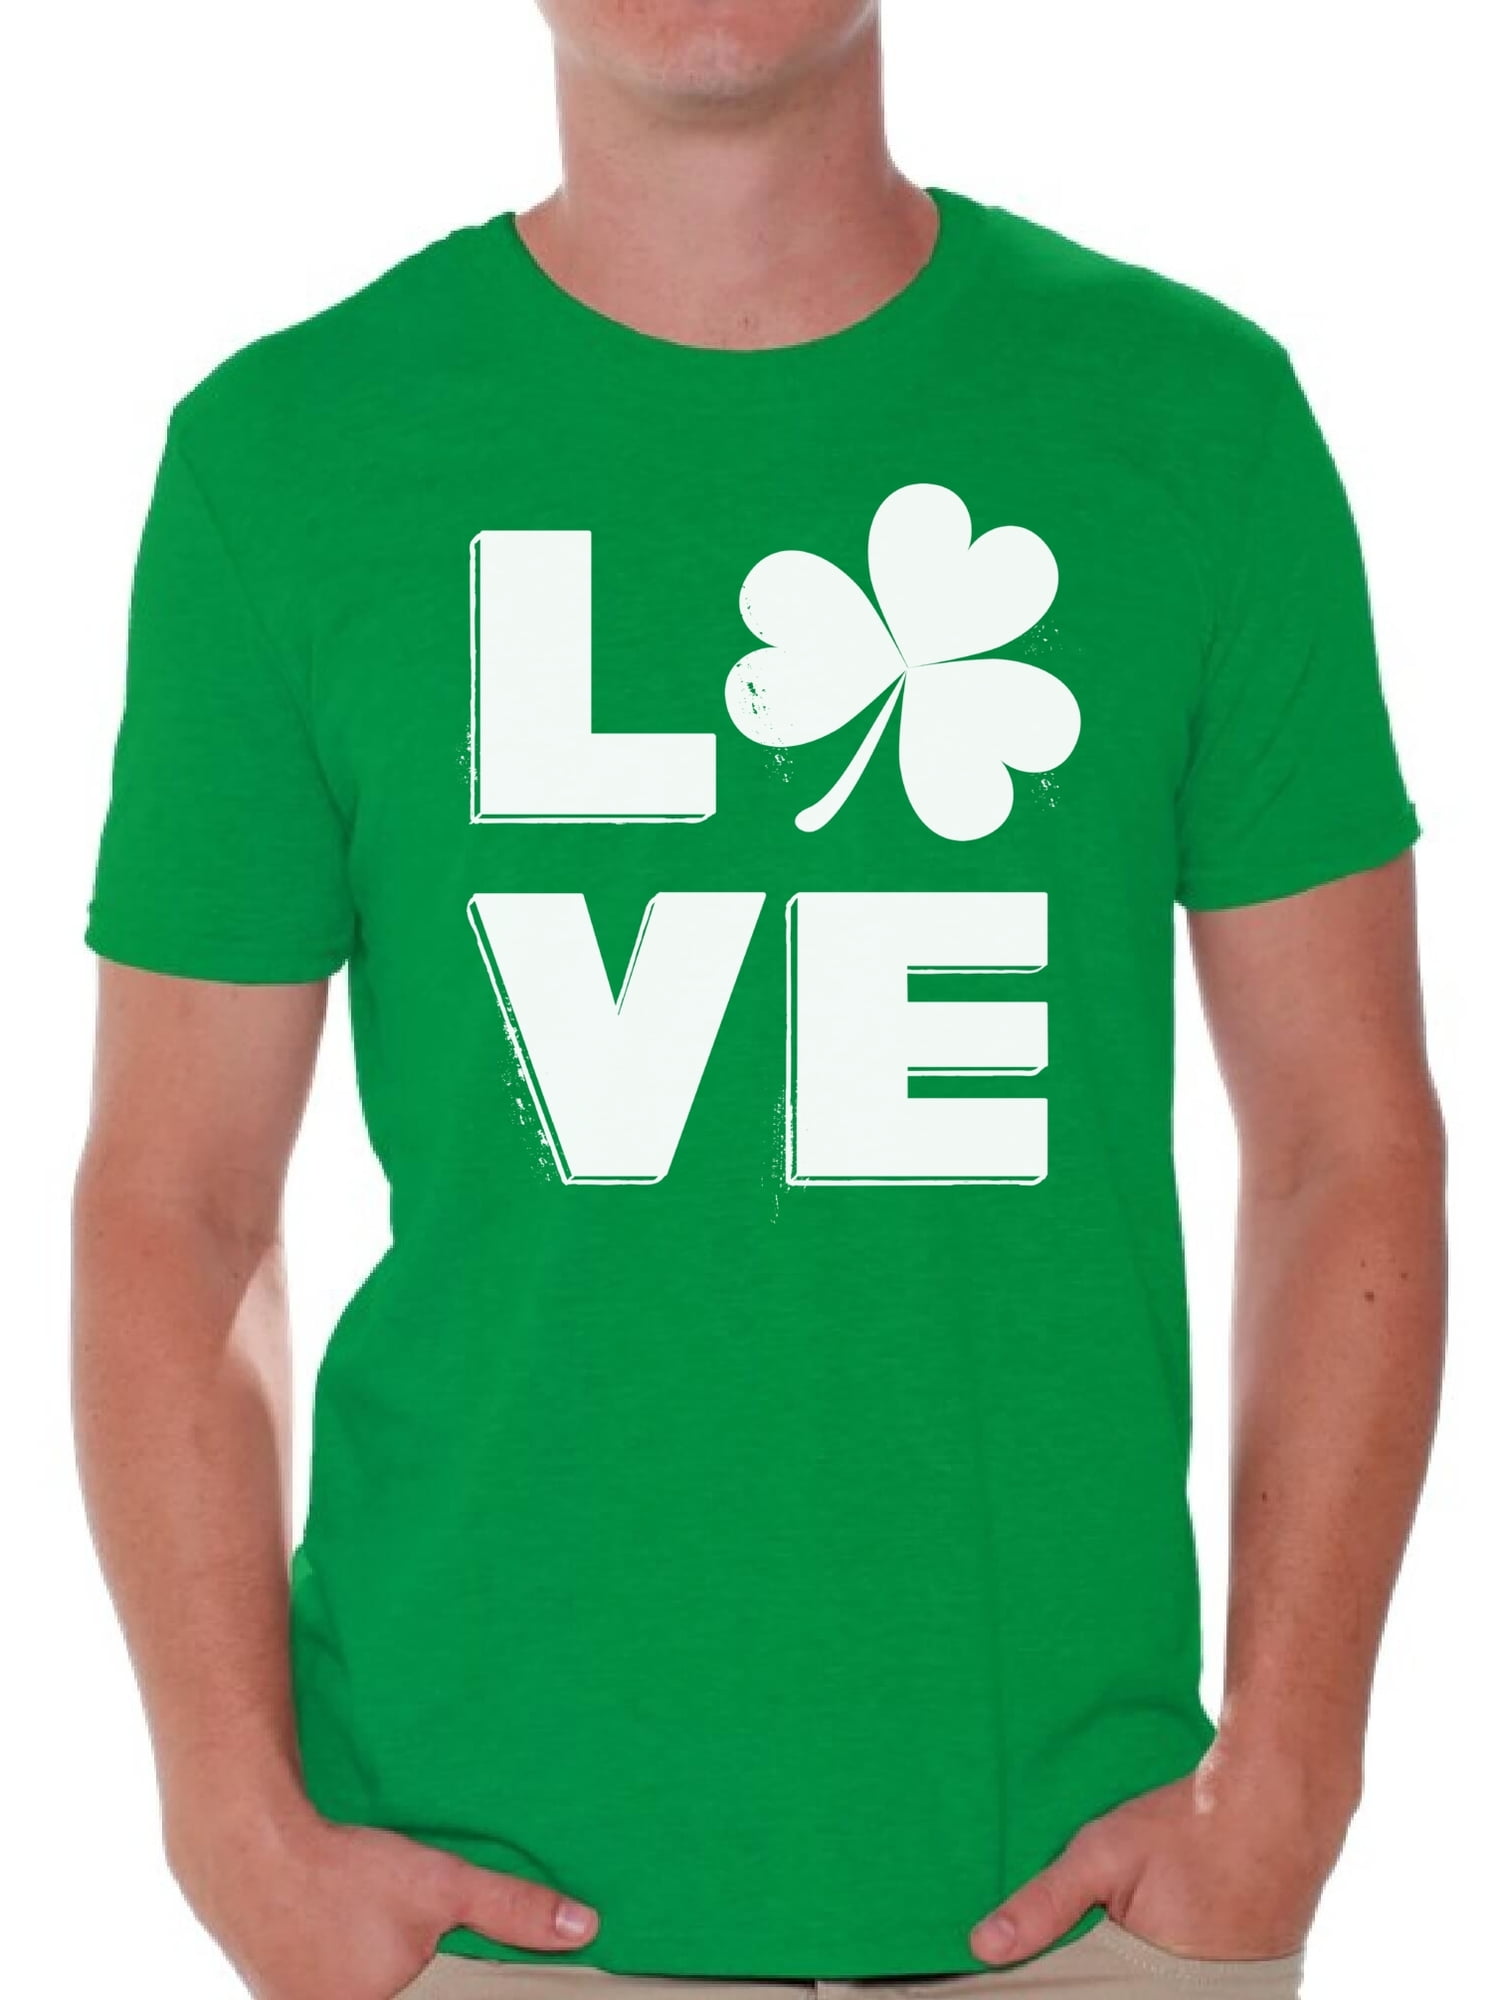 LOVE St Patricks Day Shirt Green Clover T-Shirt Irish Shamrock Saint Patrick/'s